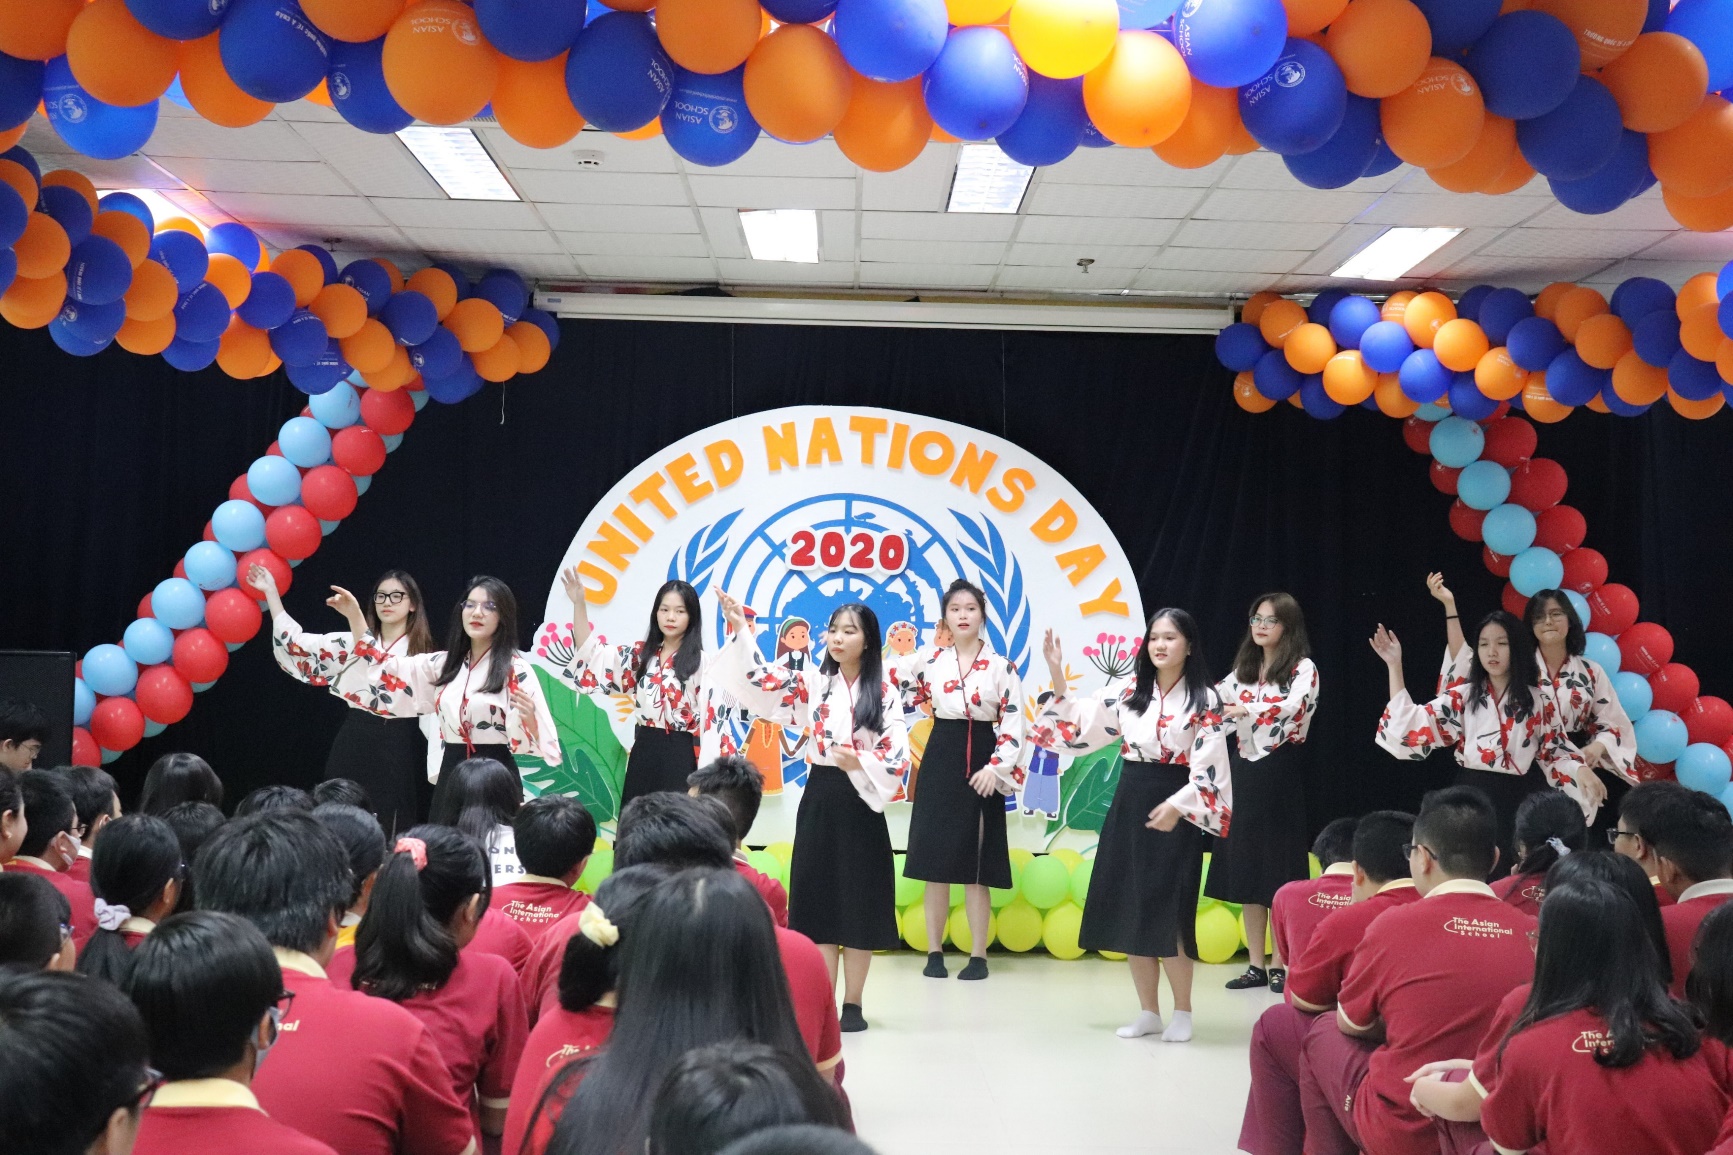 Ngày hội Liên Hiệp Quốc tại Asian School – Khi tinh thần đoàn kết và tình yêu hòa bình cùng nhau lan tỏa